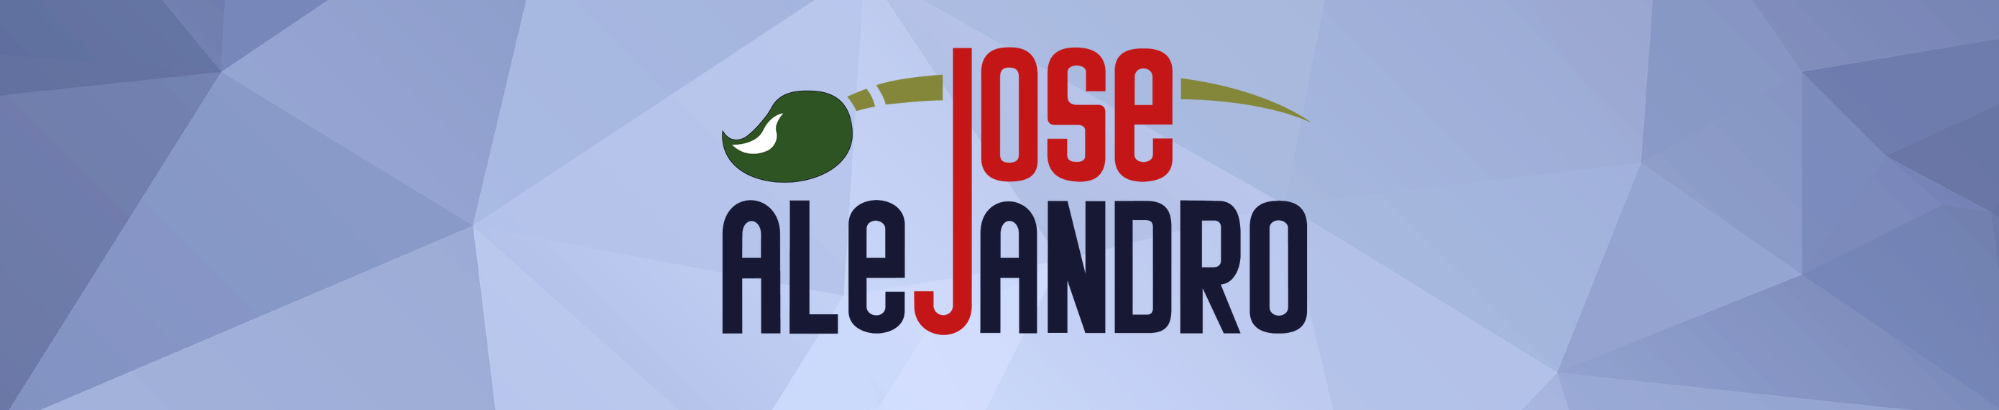 Bannière de profil de Jose Alejandro